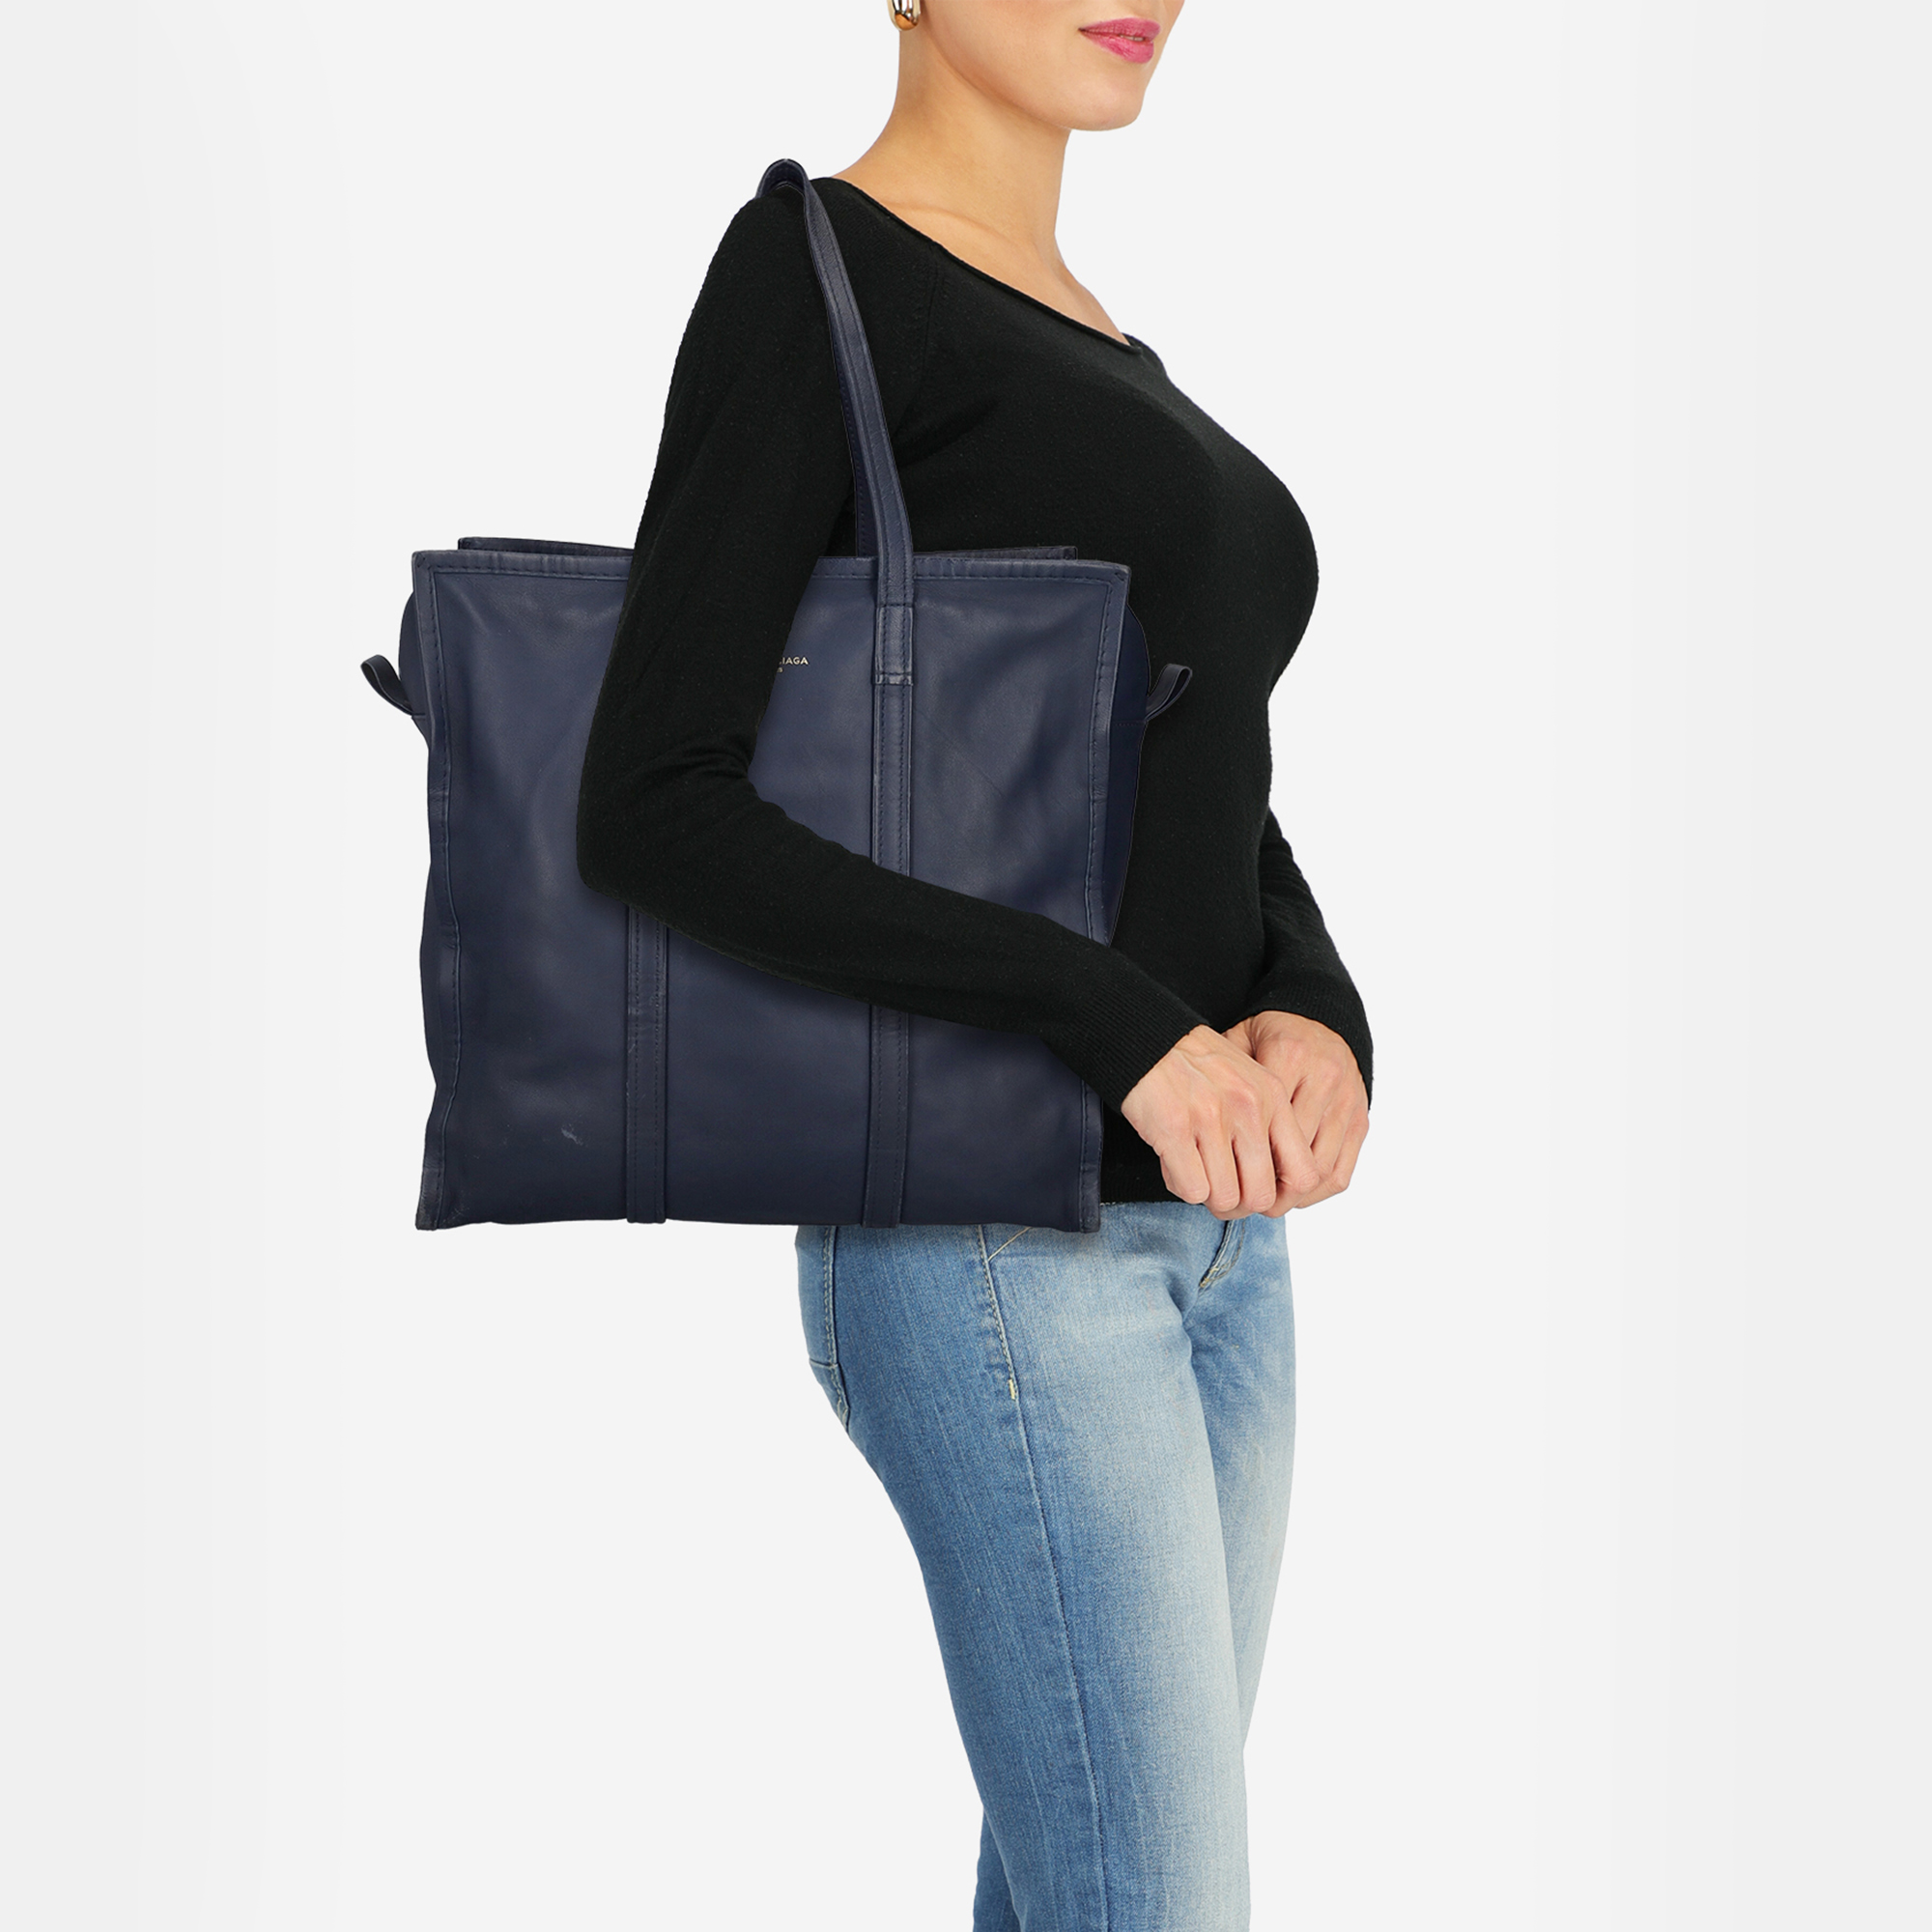 

Balenciaga Bazaar - Women's Leather Tote Bag - Navy, Navy blue